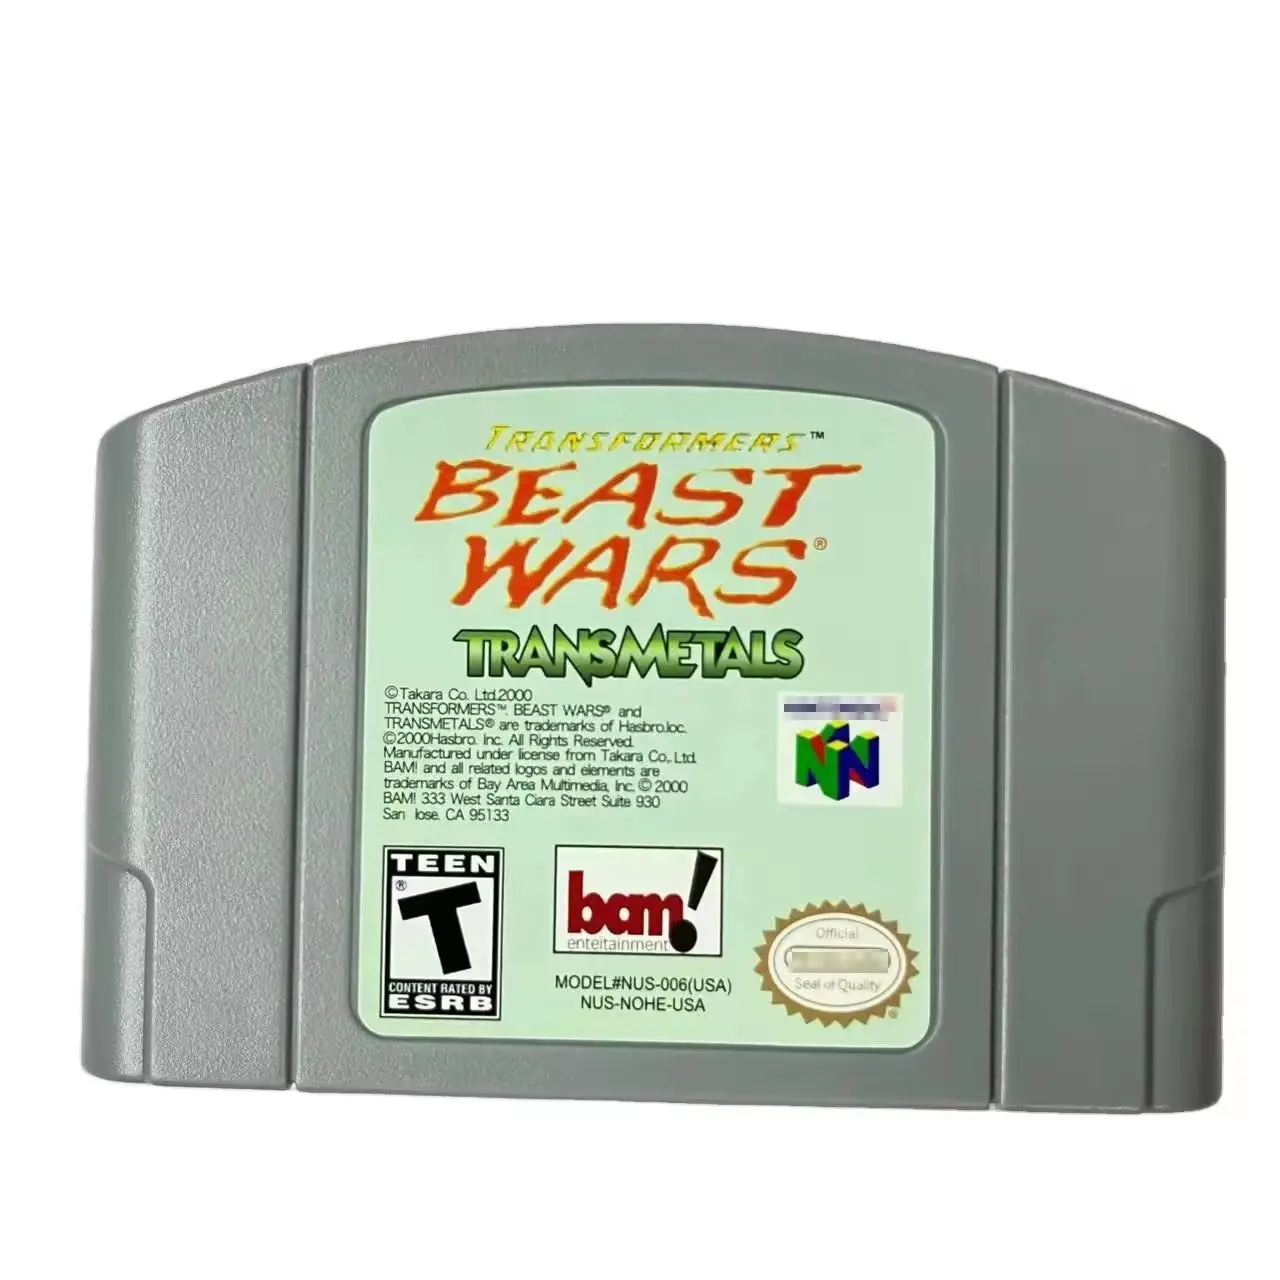 Transformers - Beast Wars transmetal N64 Trò chơi thẻ mực cho Nintendo 64 chúng tôi phiên bản